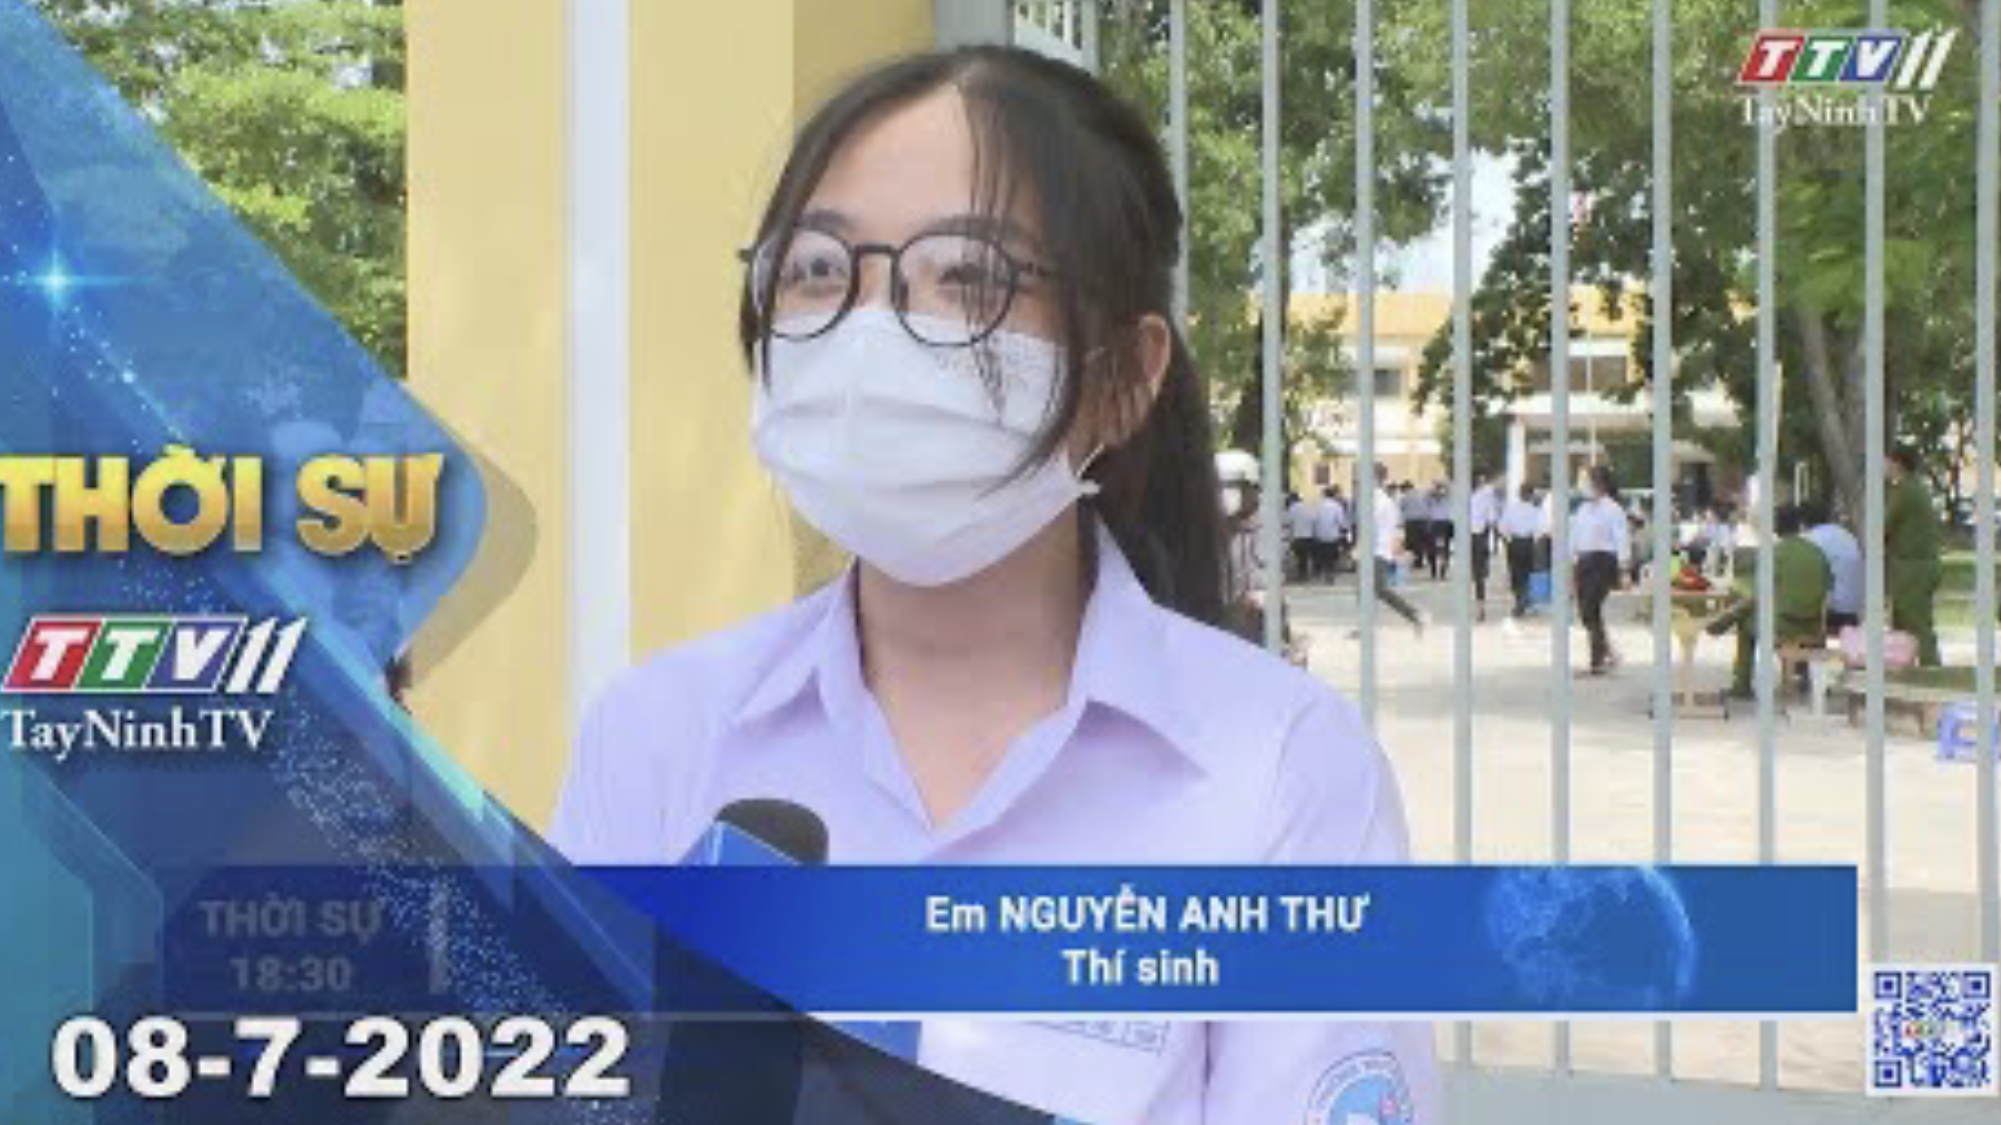 Thời sự Tây Ninh 08-7-2022 | Tin tức hôm nay | TayNinhTV